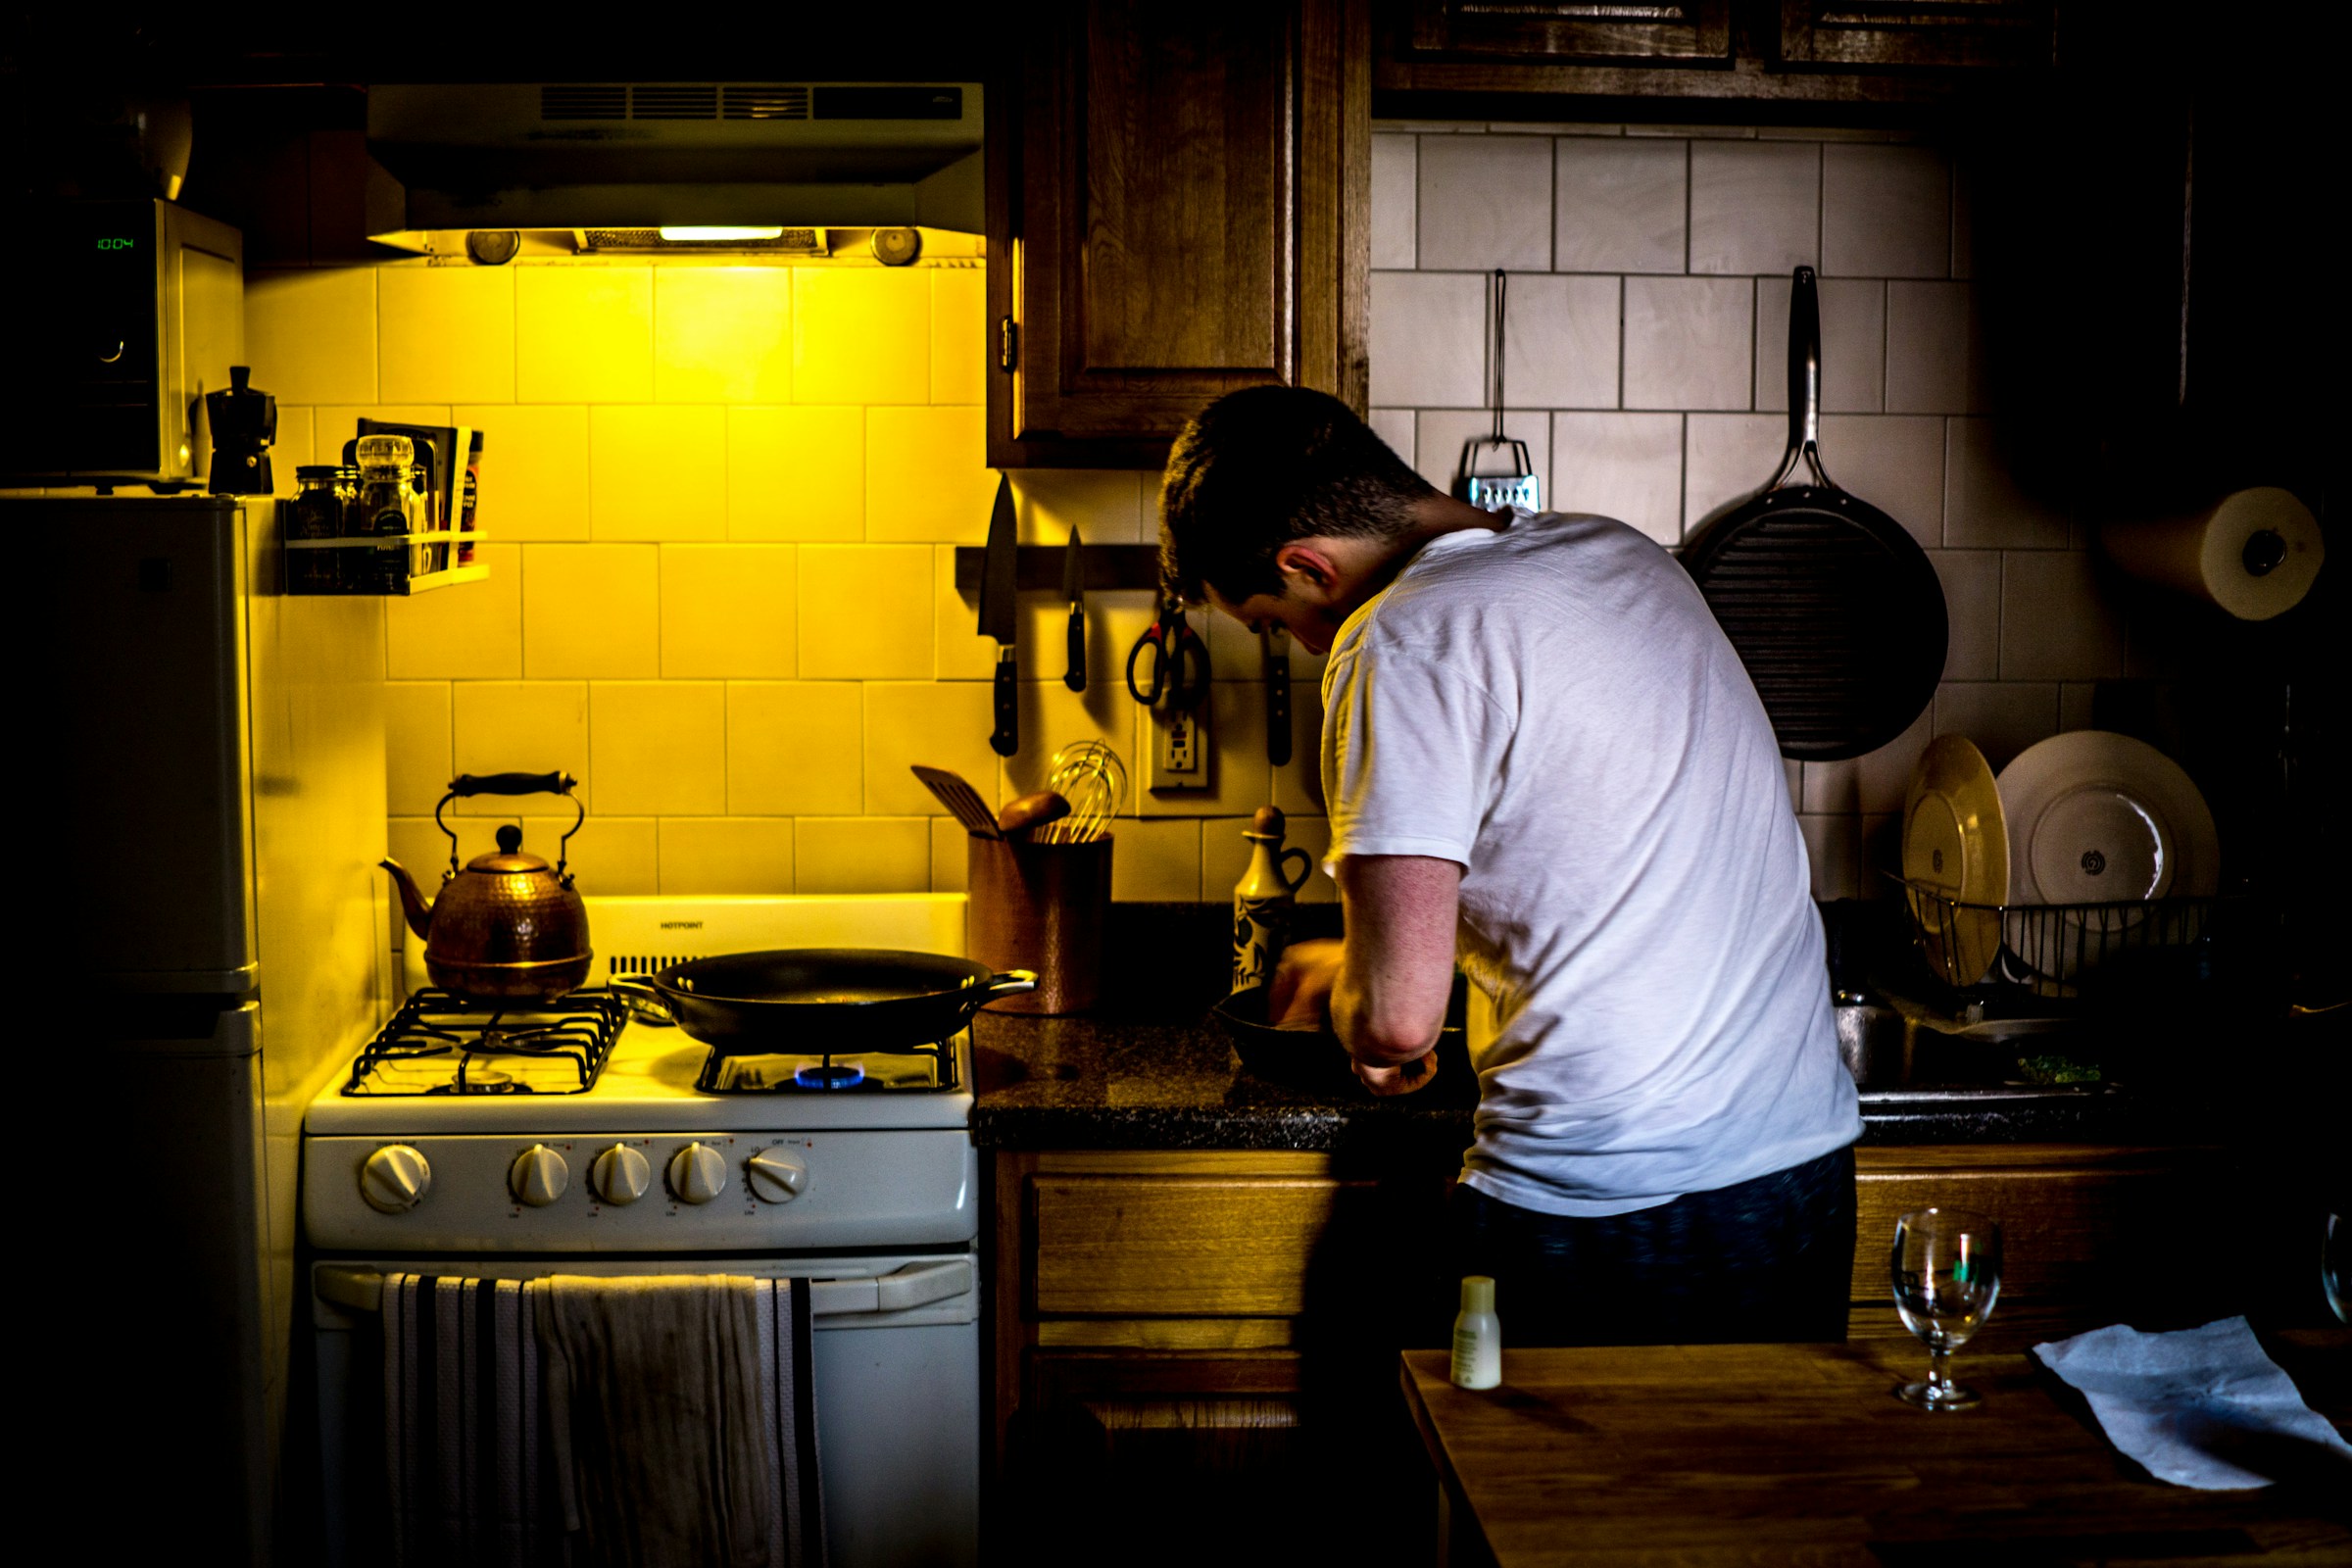 Un homme dans la cuisine | Source : Unsplash